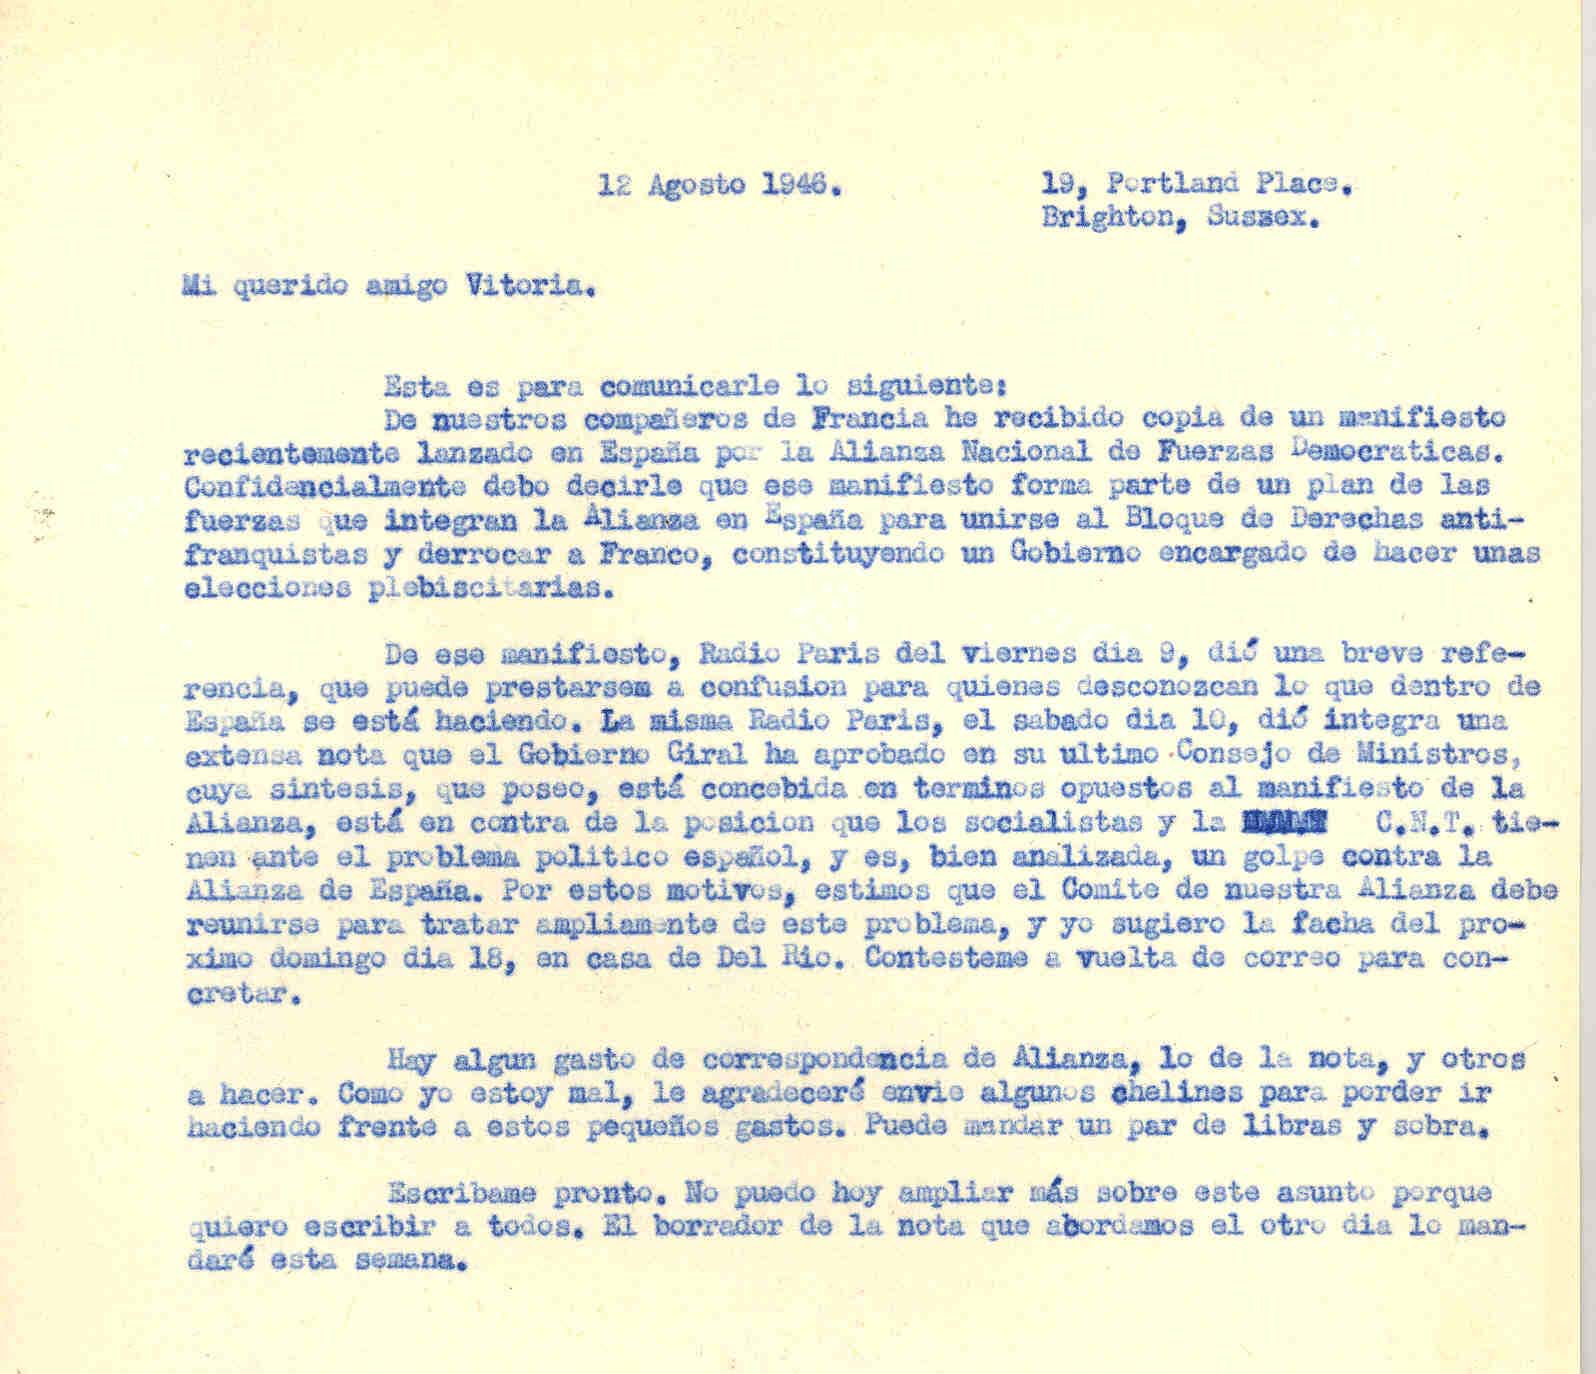 Carta a Roque Victoria hablando de un manifiesto lanzado por ANFD en España para derrotar a Franco; el gobierno Giral es opuesto al manifiesto y en contra de socialistas y la CNT.